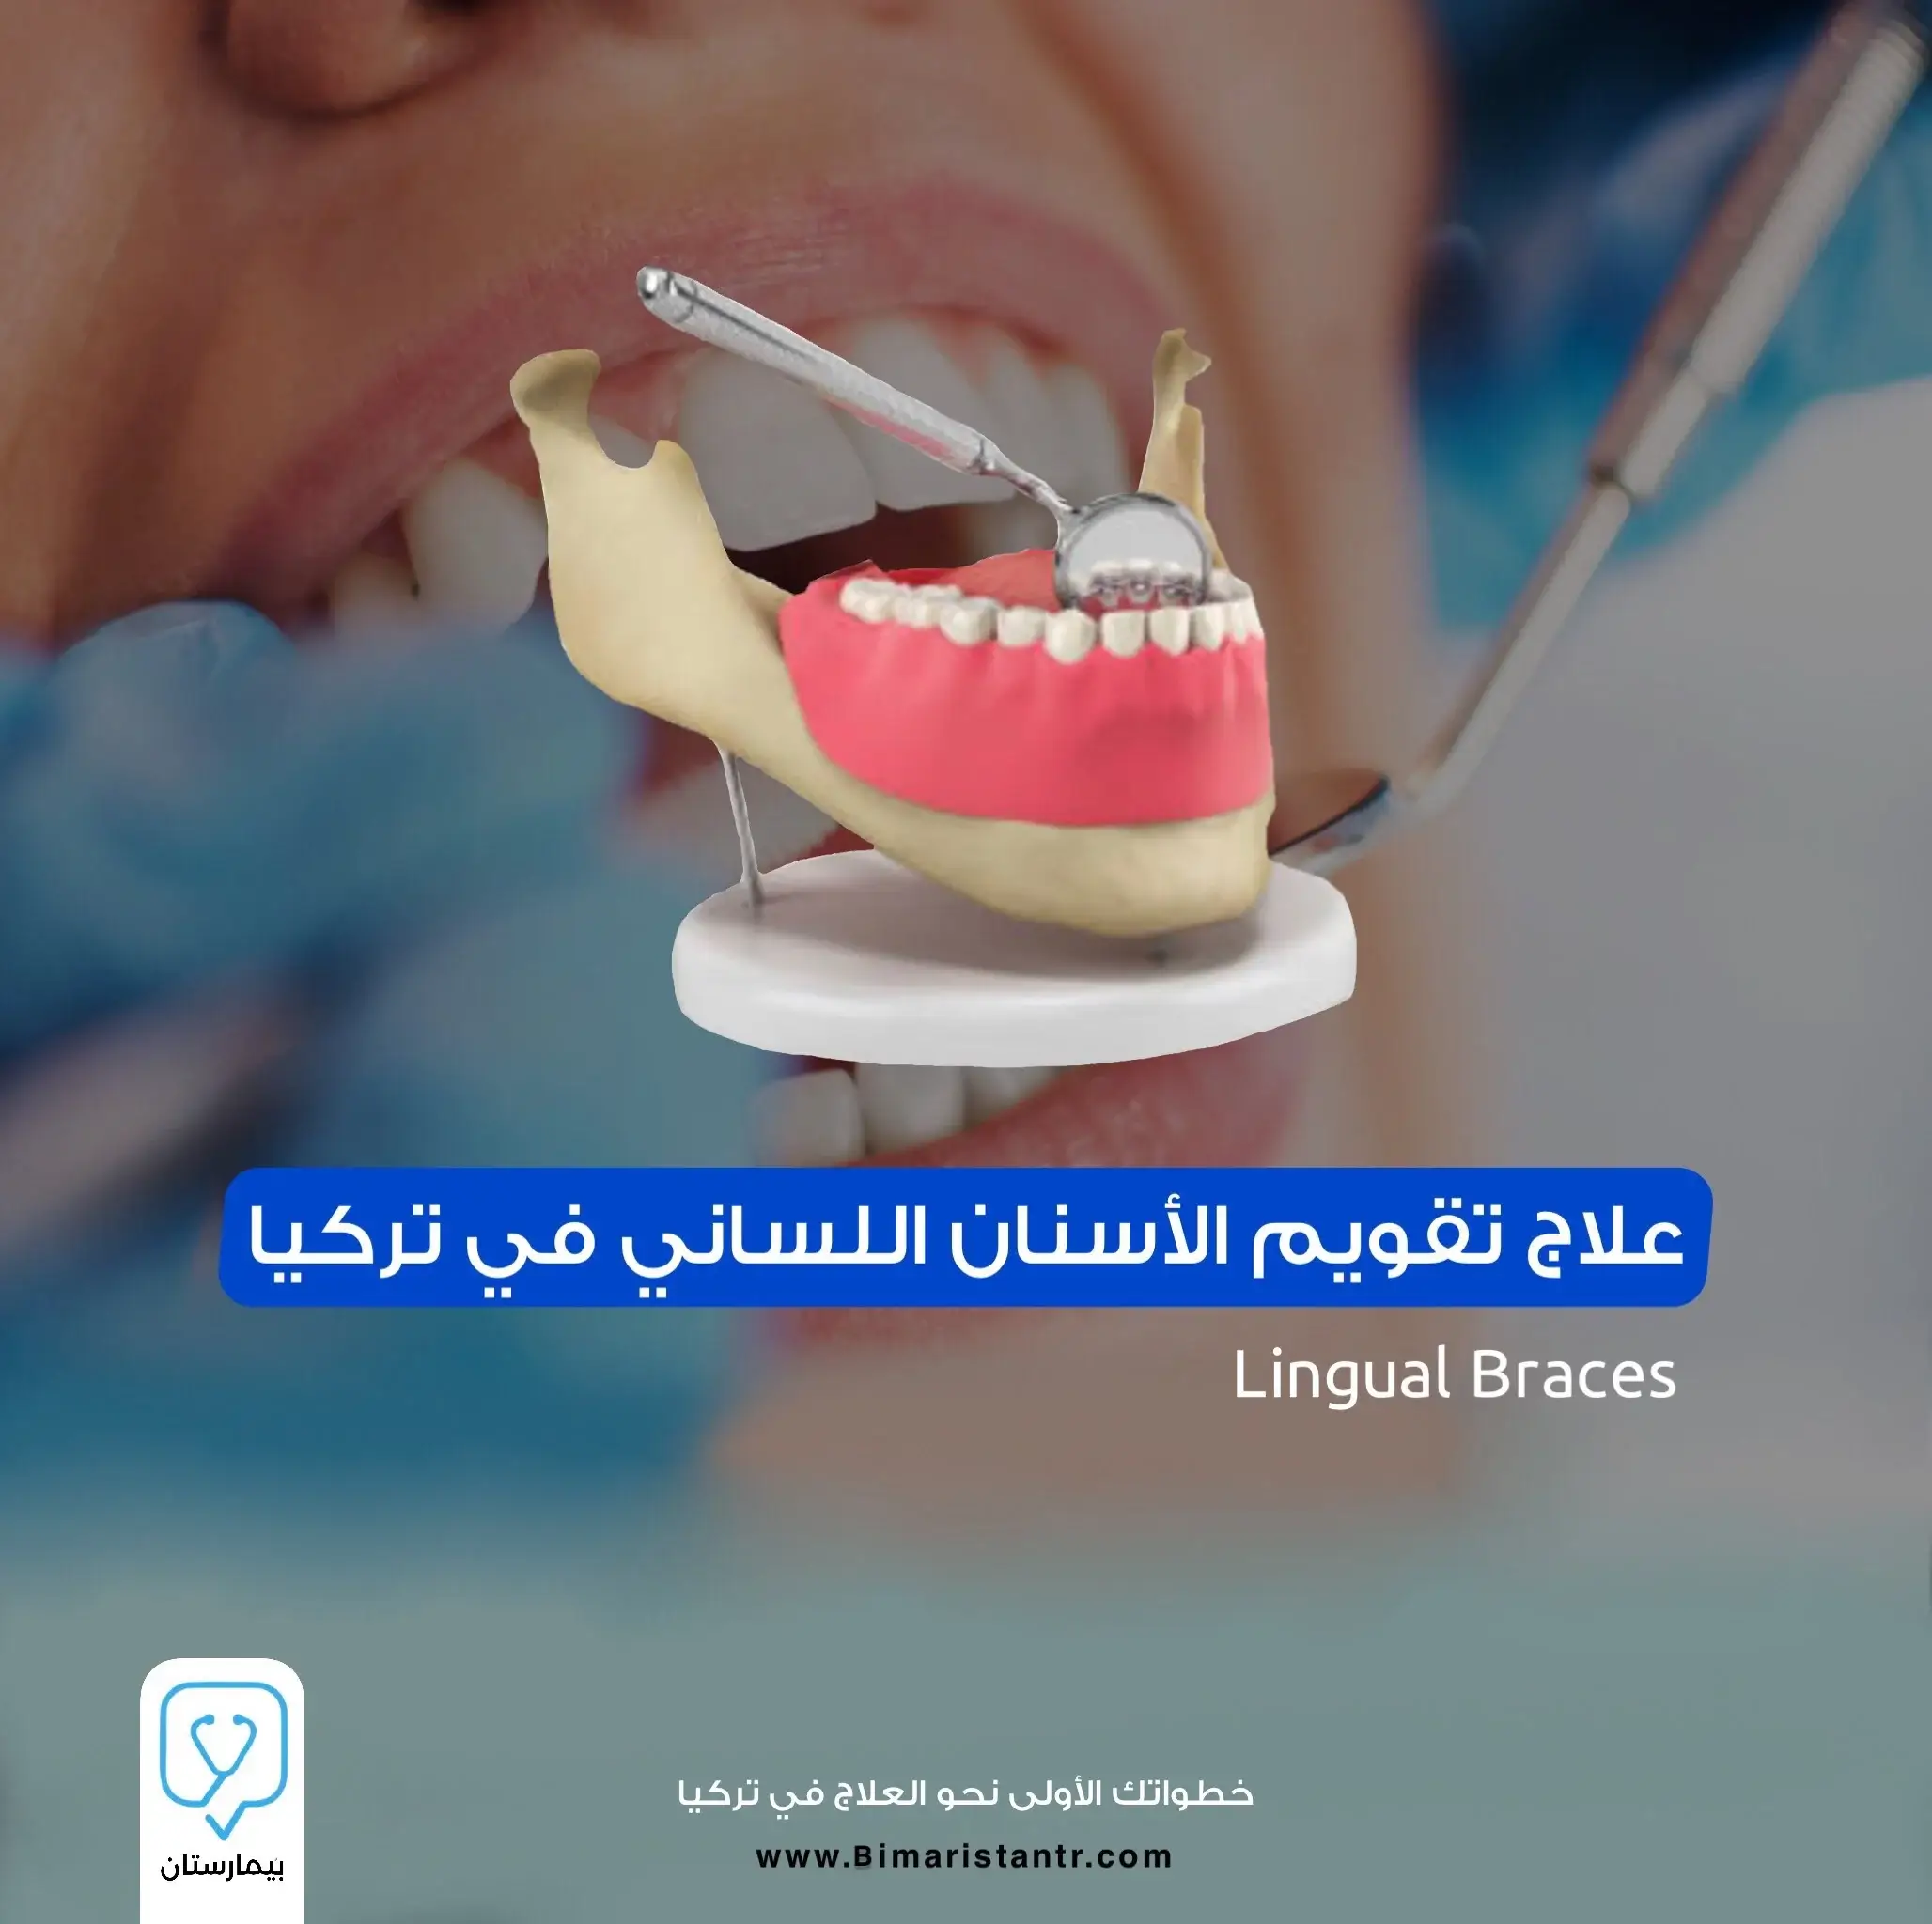 علاج-تقويم-الأسنان-اللساني-في-تركيا؟